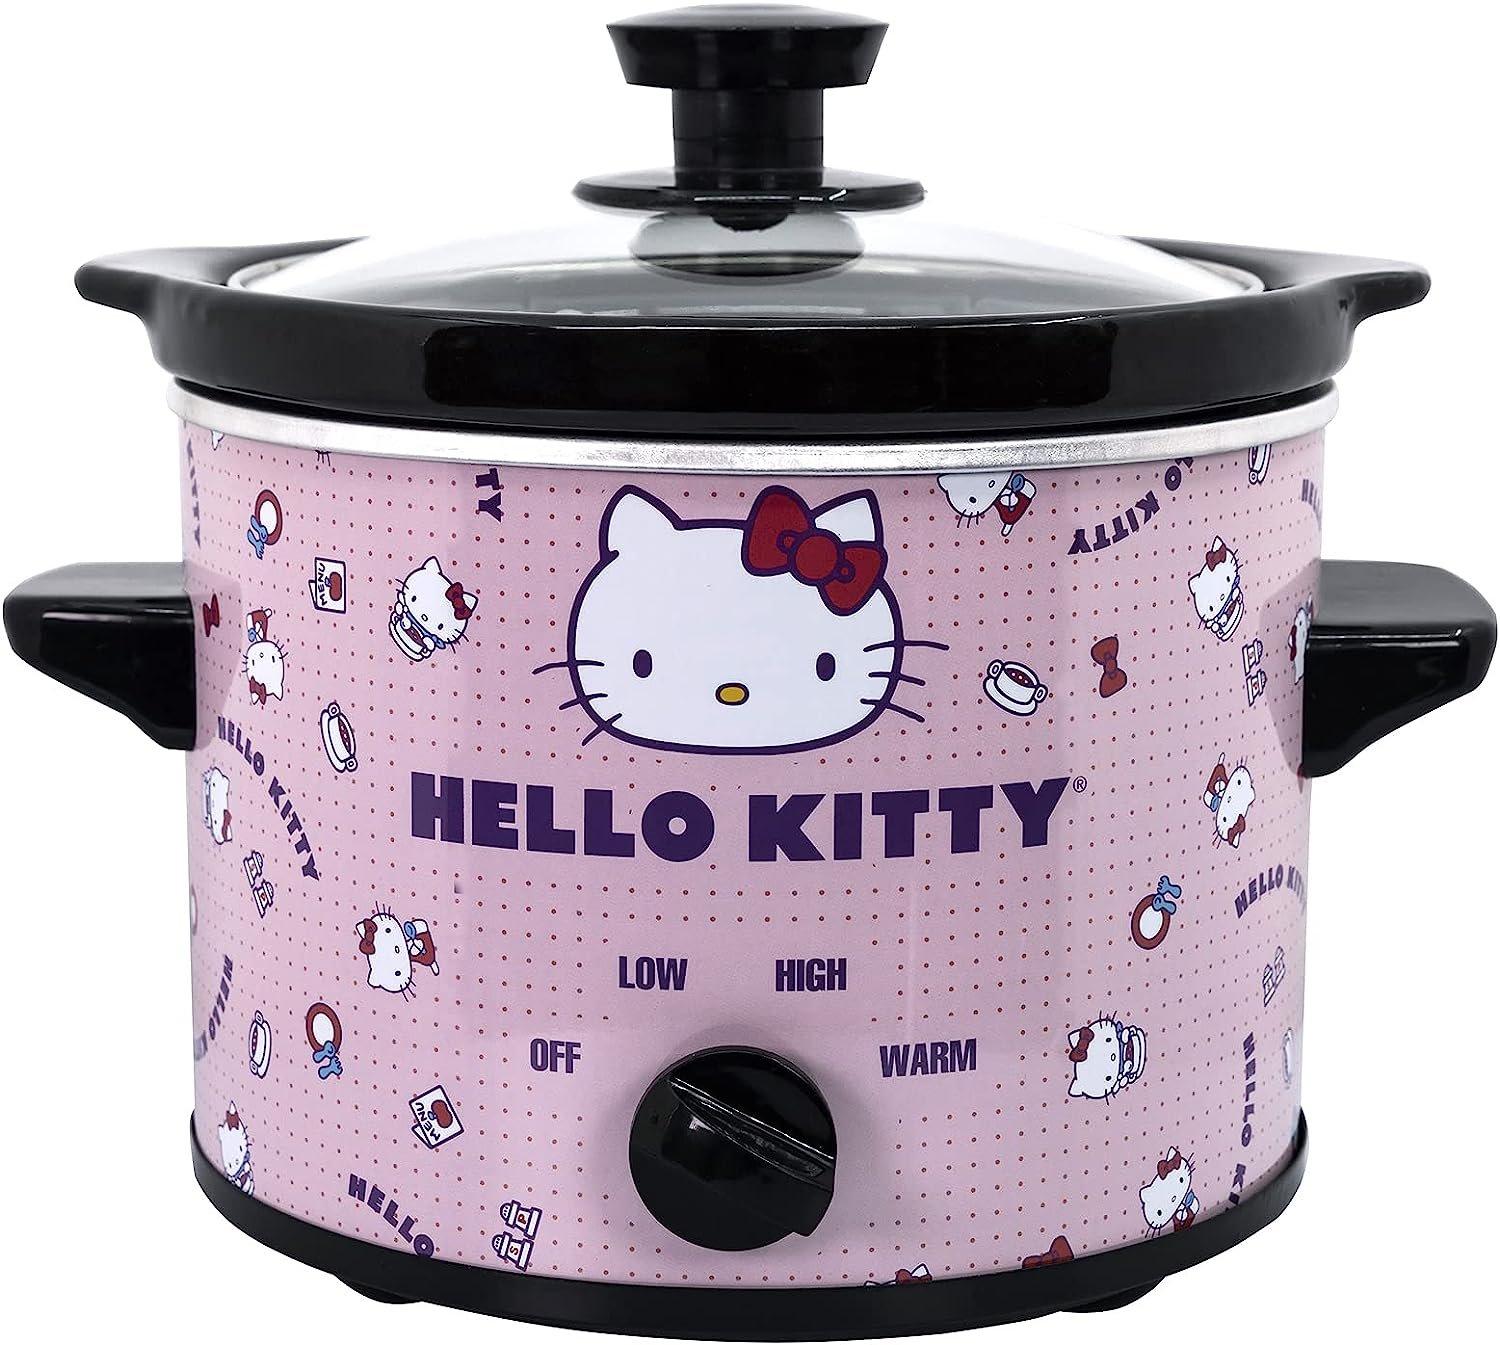 https://media.gamestop.com/i/gamestop/20005568/Hello-Kitty-2-Qt-Slow-Cooker